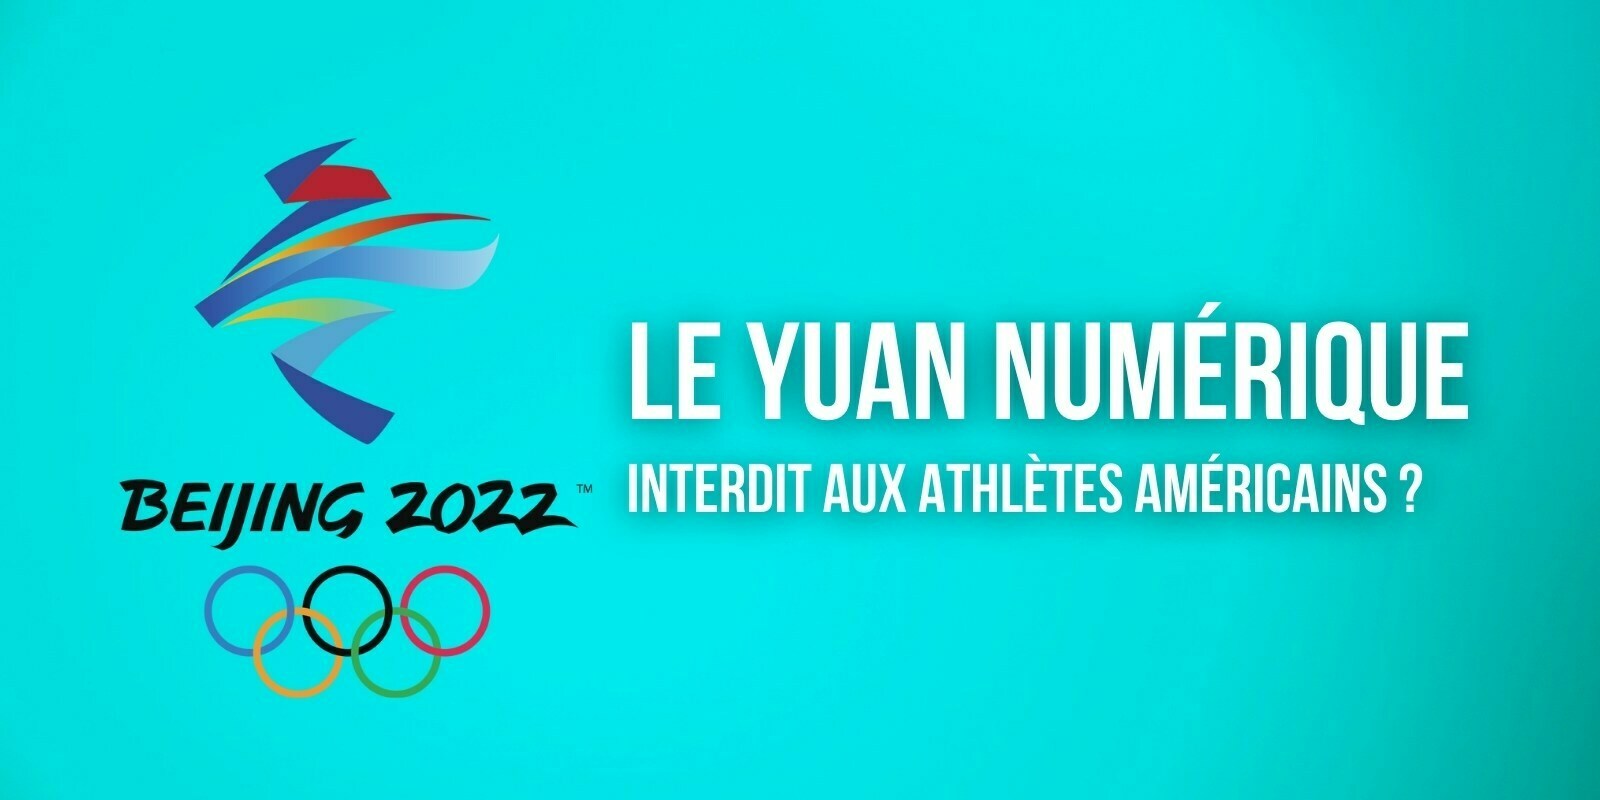 Yuan numérique : une interdiction pour les athlètes américains aux JO d'hiver 2022 ?